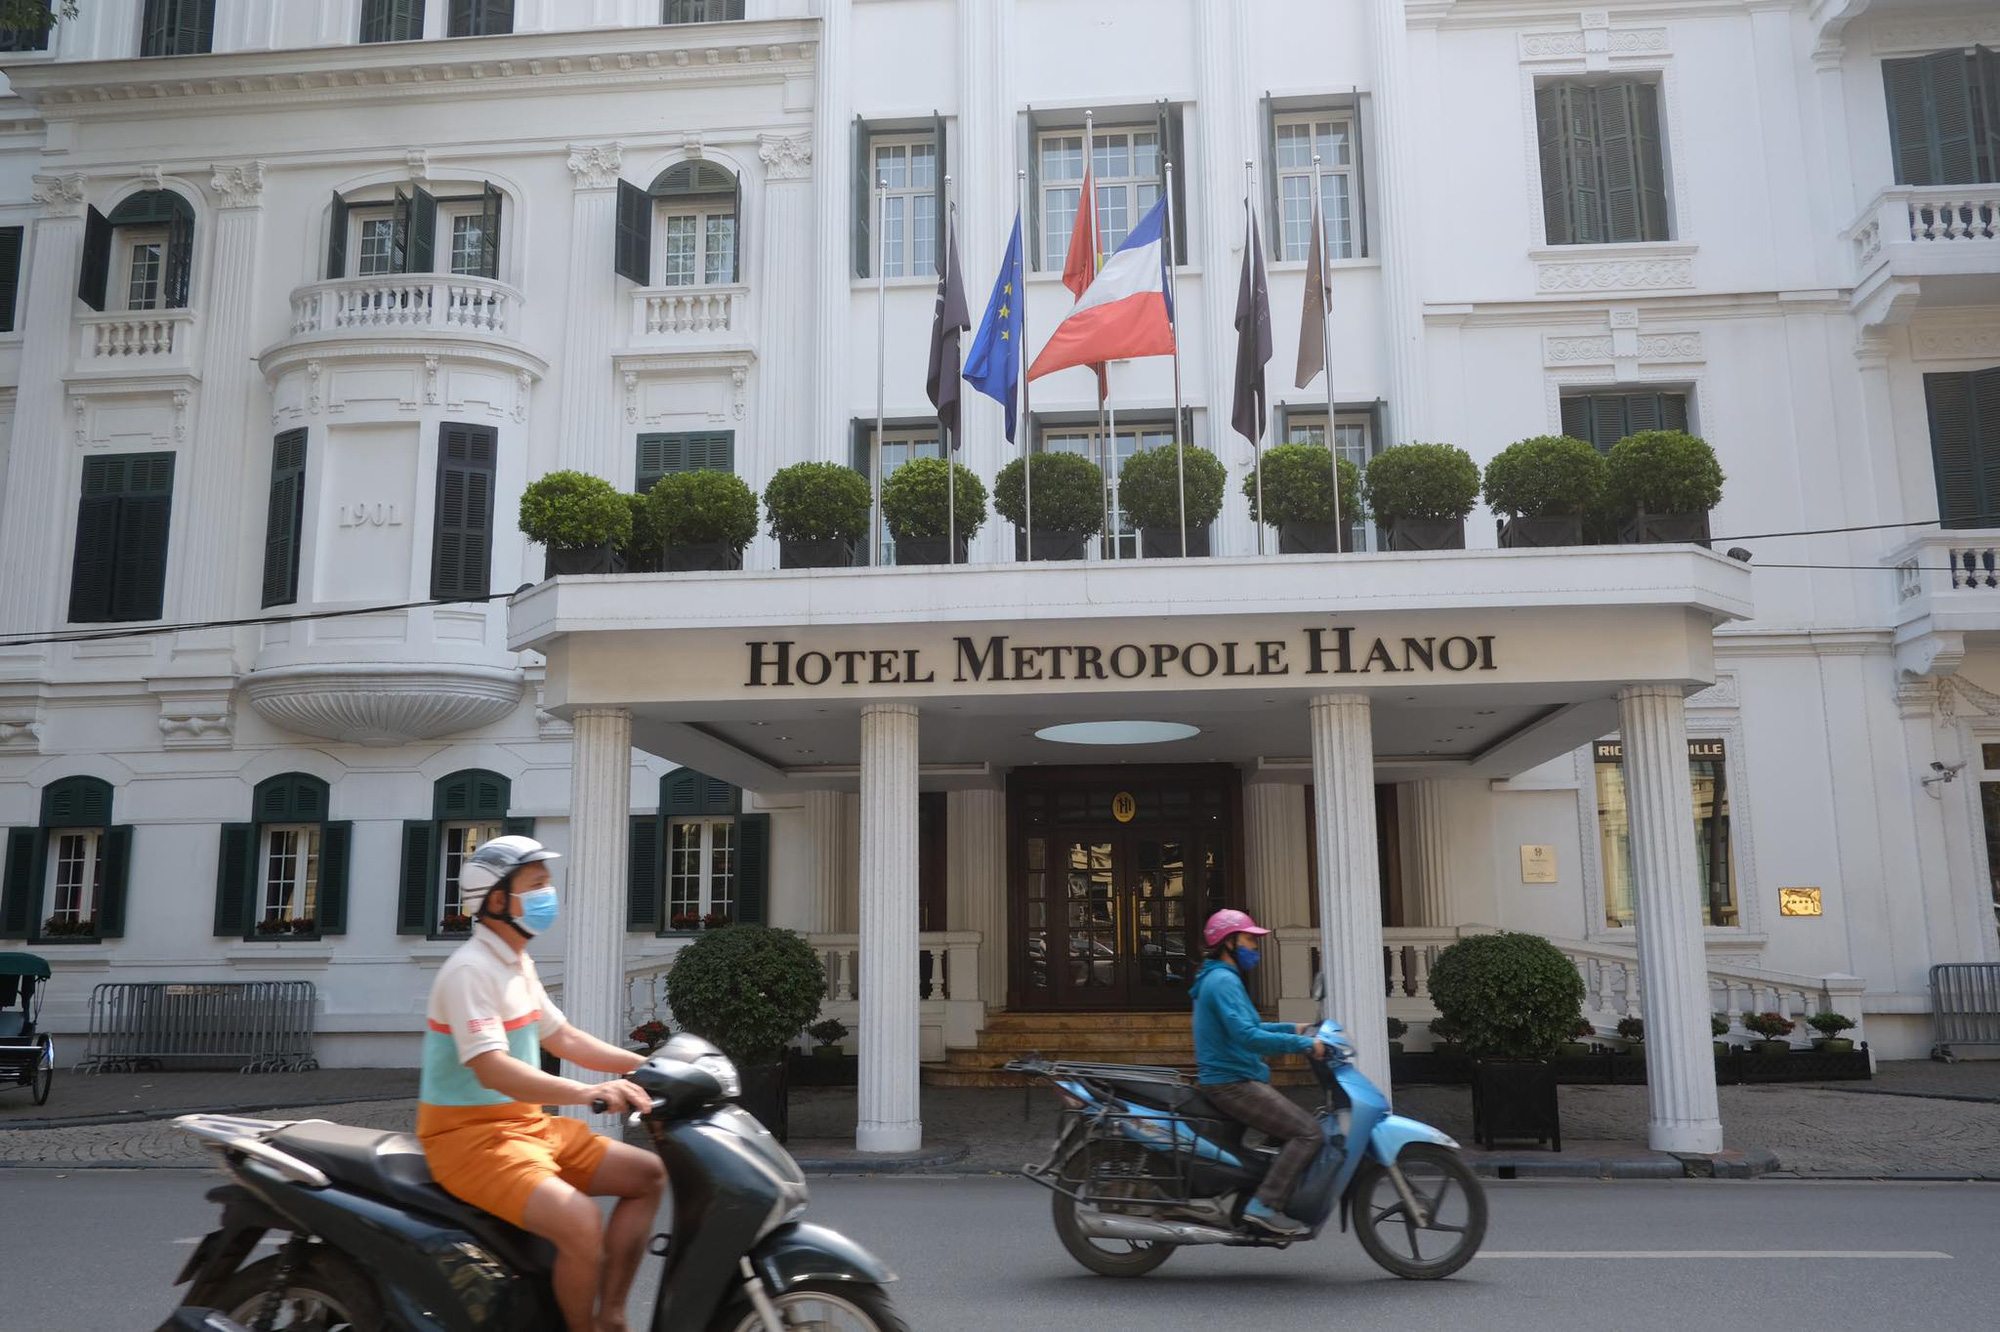 Phó Chủ tịch quận Hoàn Kiếm: Tạm dừng hoạt động khách sạn Metropole sau khi có người Anh nhiễm COVID-19 lưu trú - Ảnh 1.